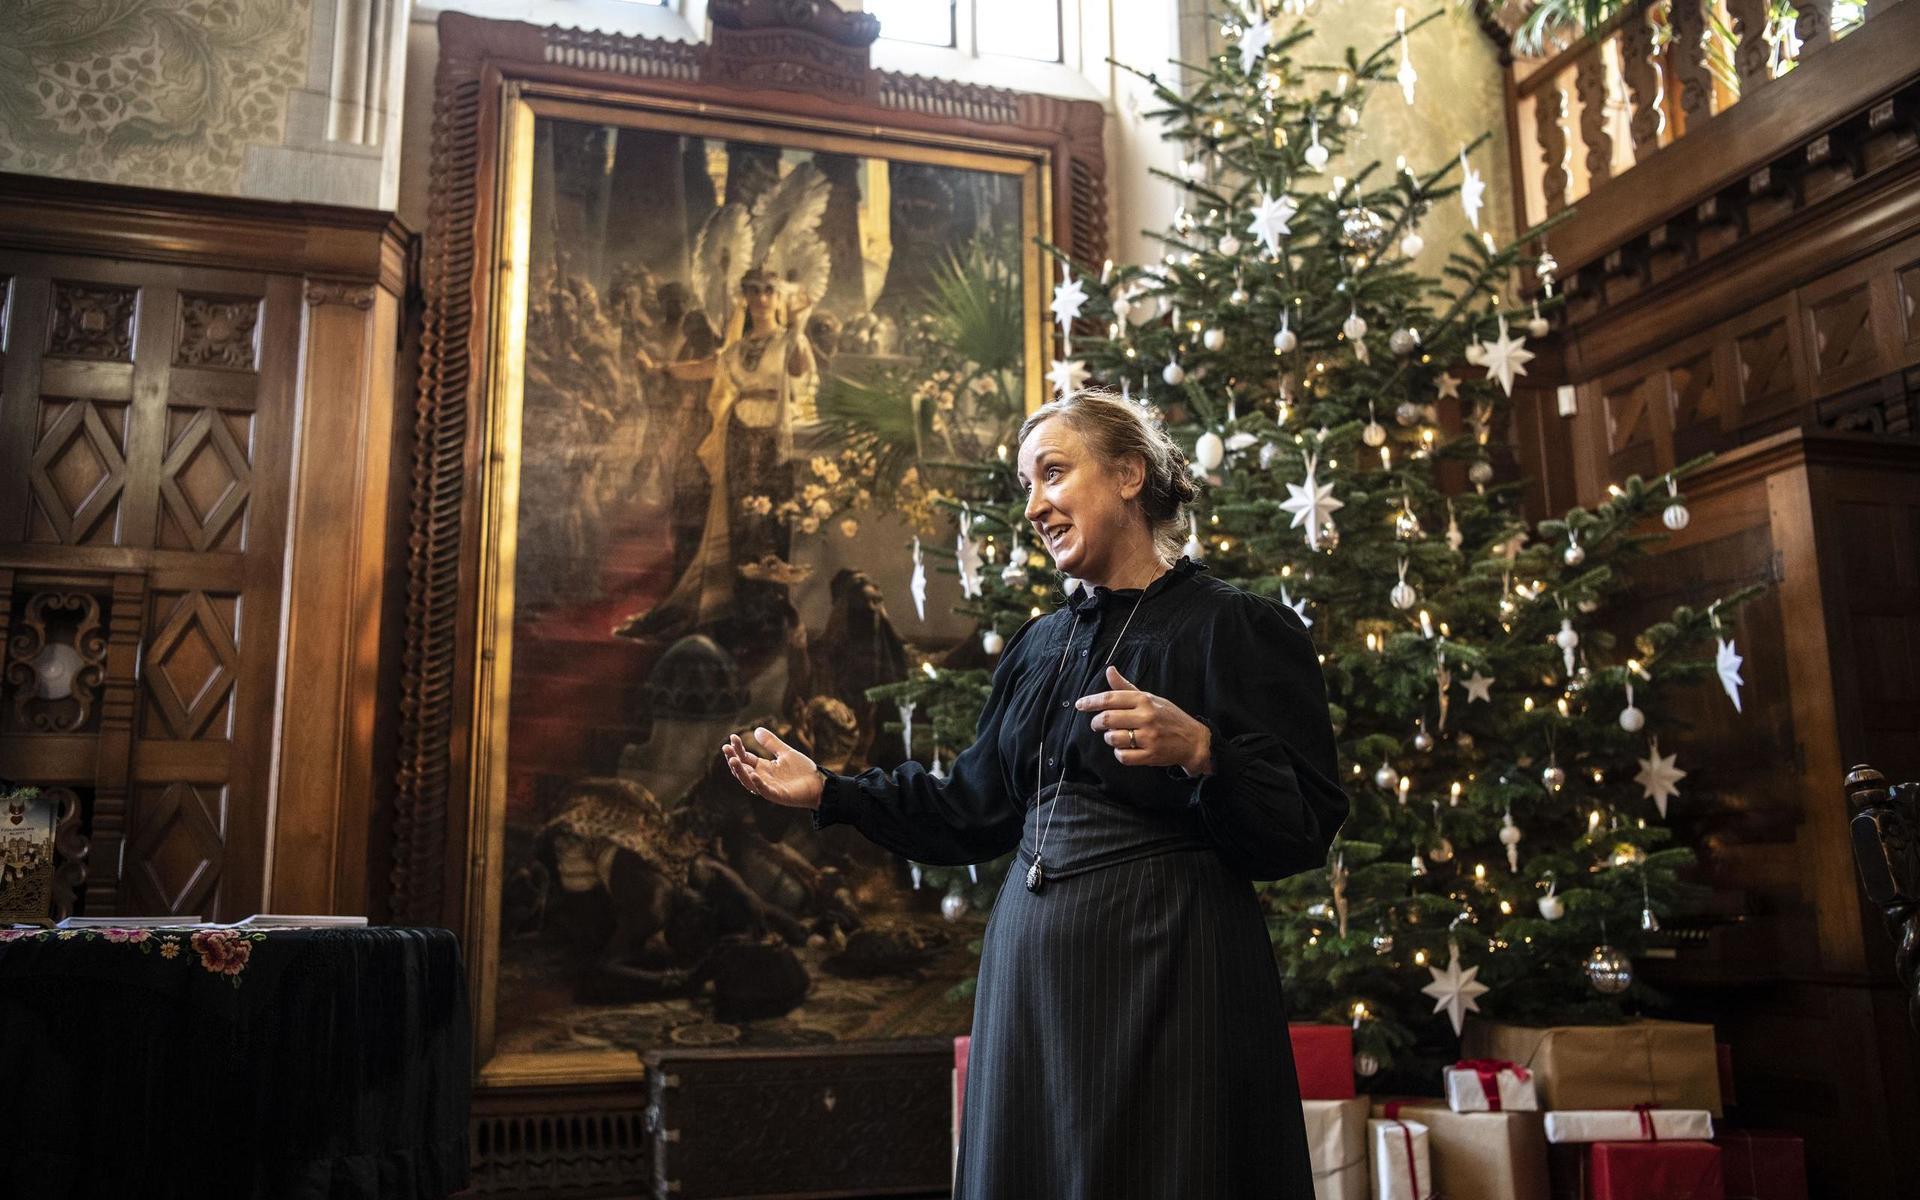 Tjolöholms slotts kulturchef Karin Kvicklund berättar att årets julfirande ser annorlunda ut på slottet.